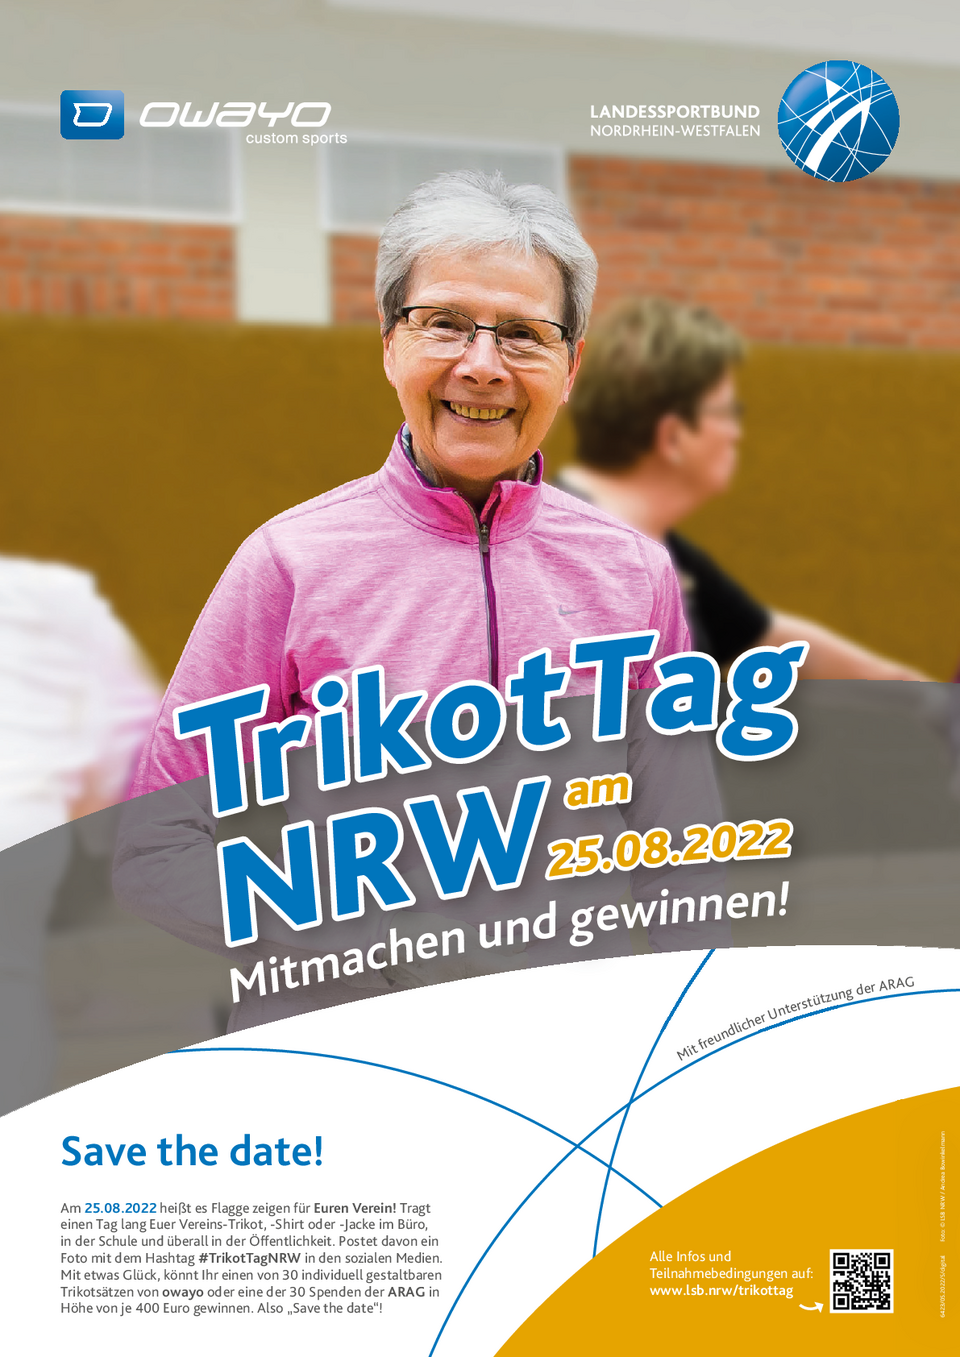 Motiv 5 zum TrikotTag NRW: ältere Dame im Trikot/in Vereinsjacke